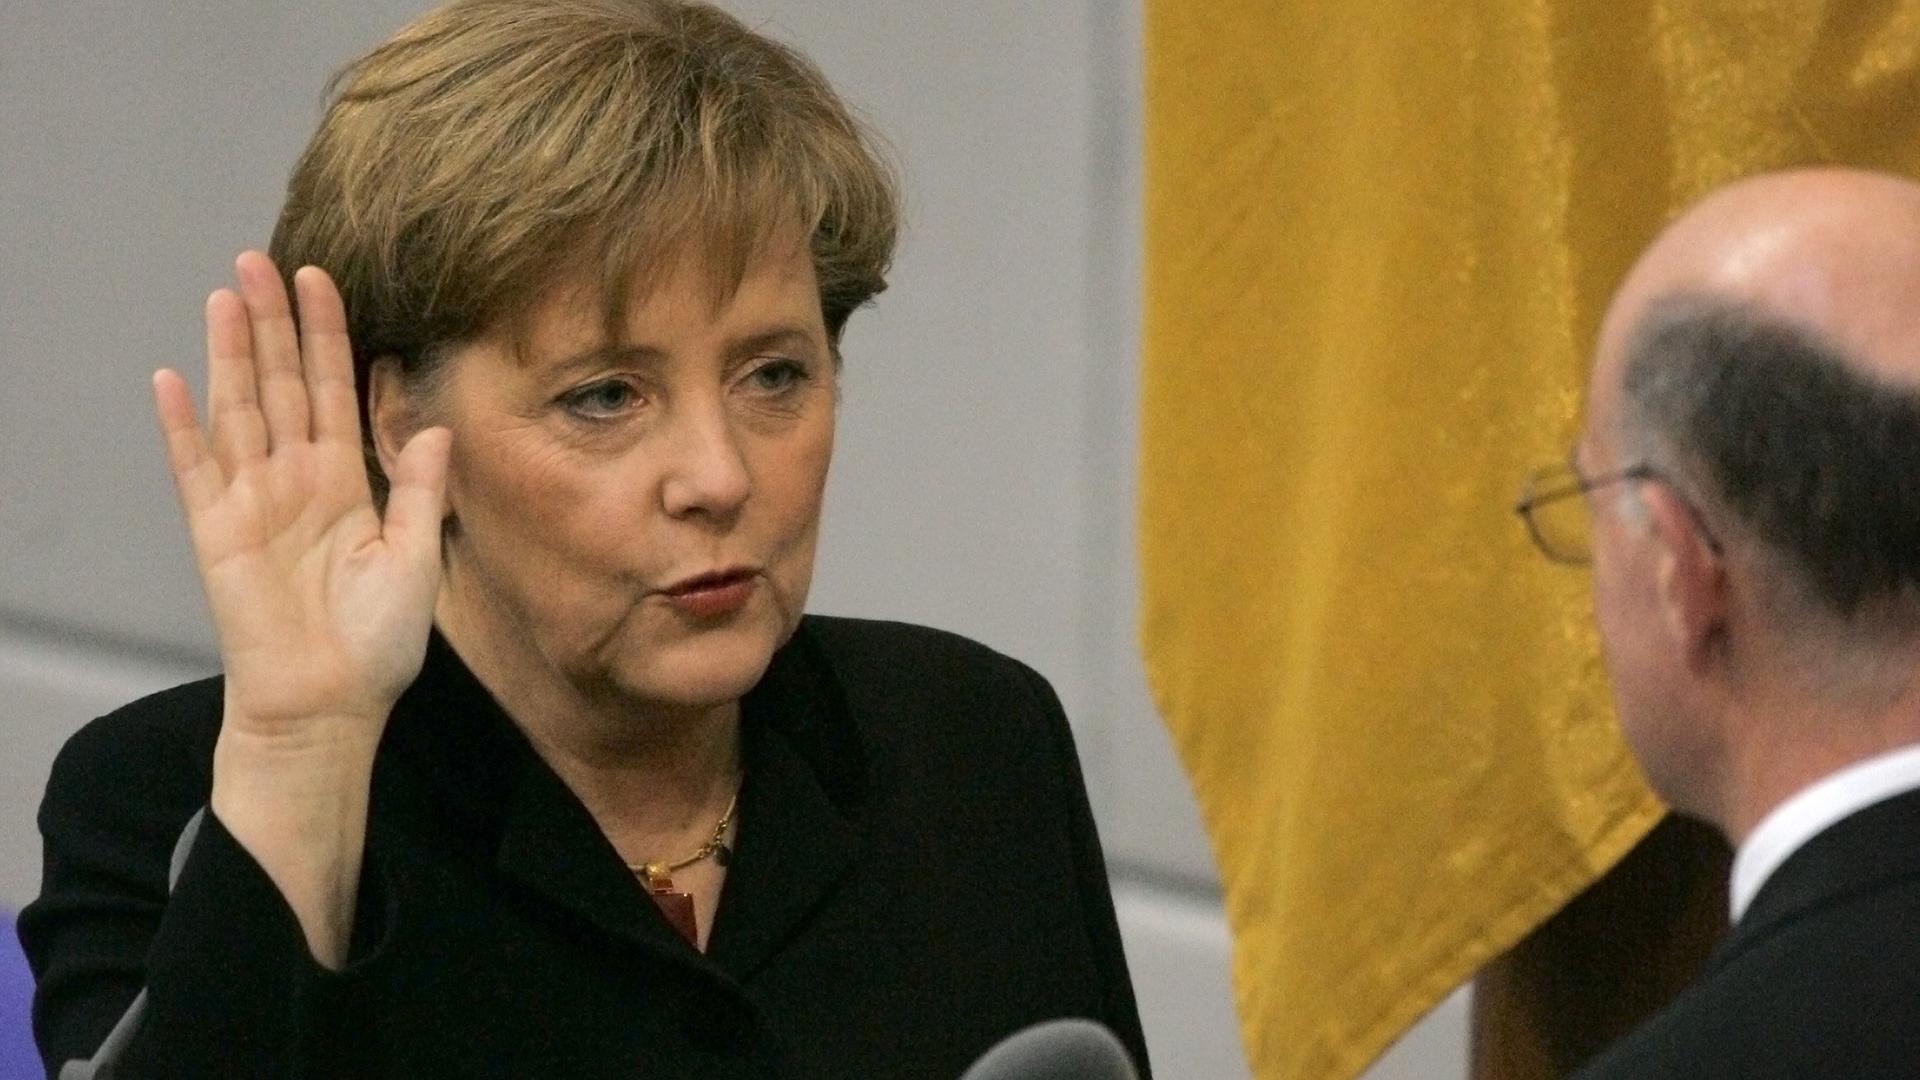 Merkel erhebt die Hand und spricht etwas dabei.